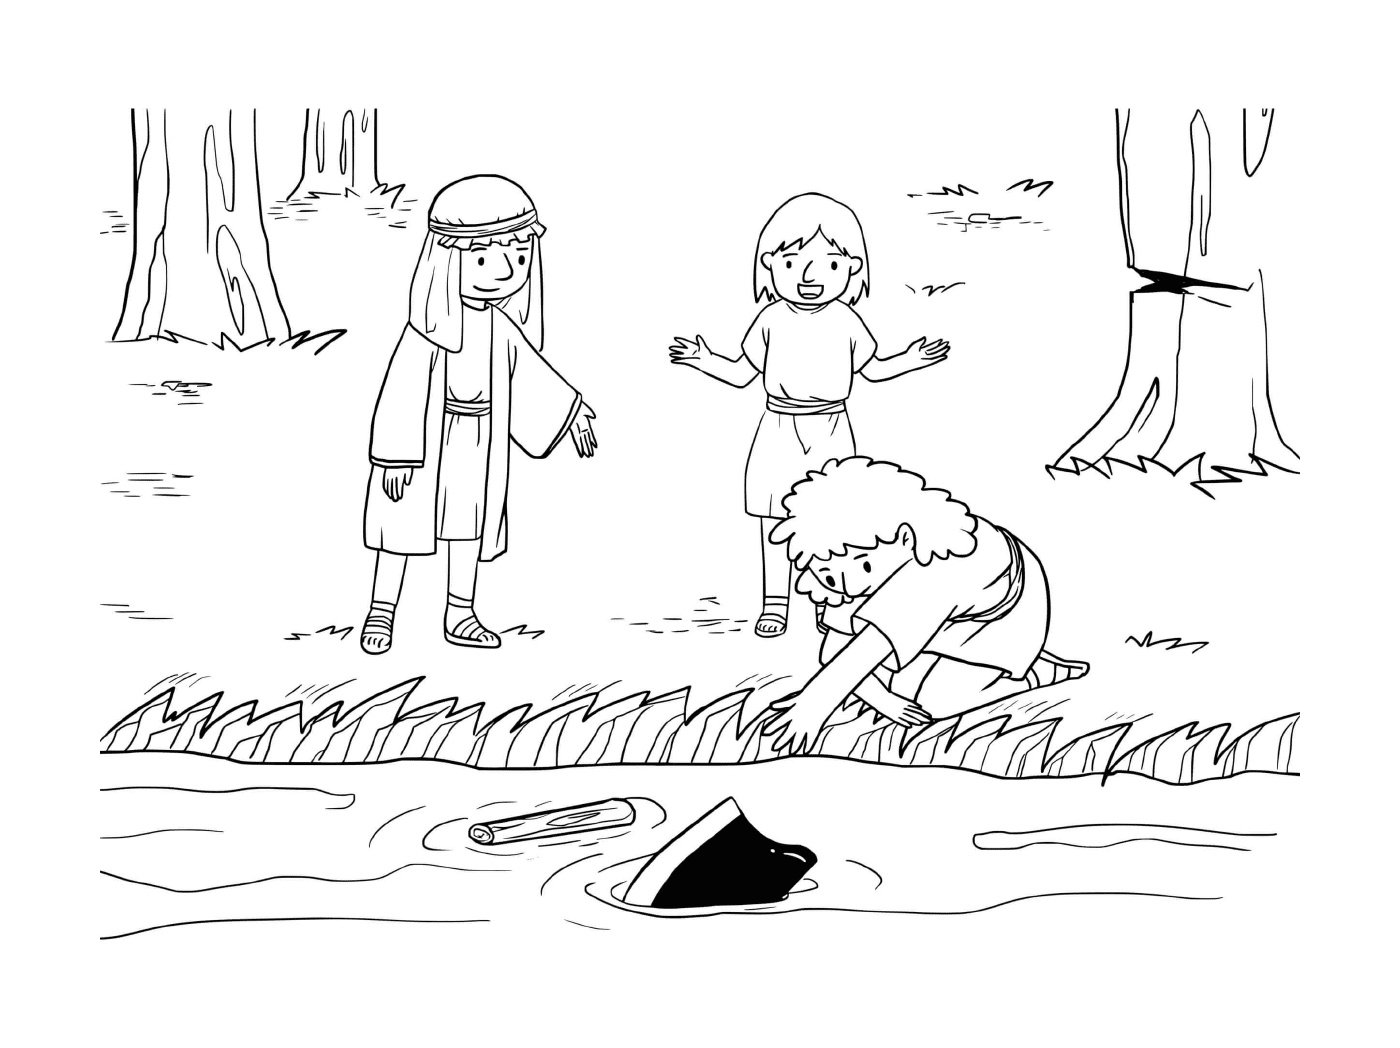  Ragazzo e ragazza che giocano in un laghetto 